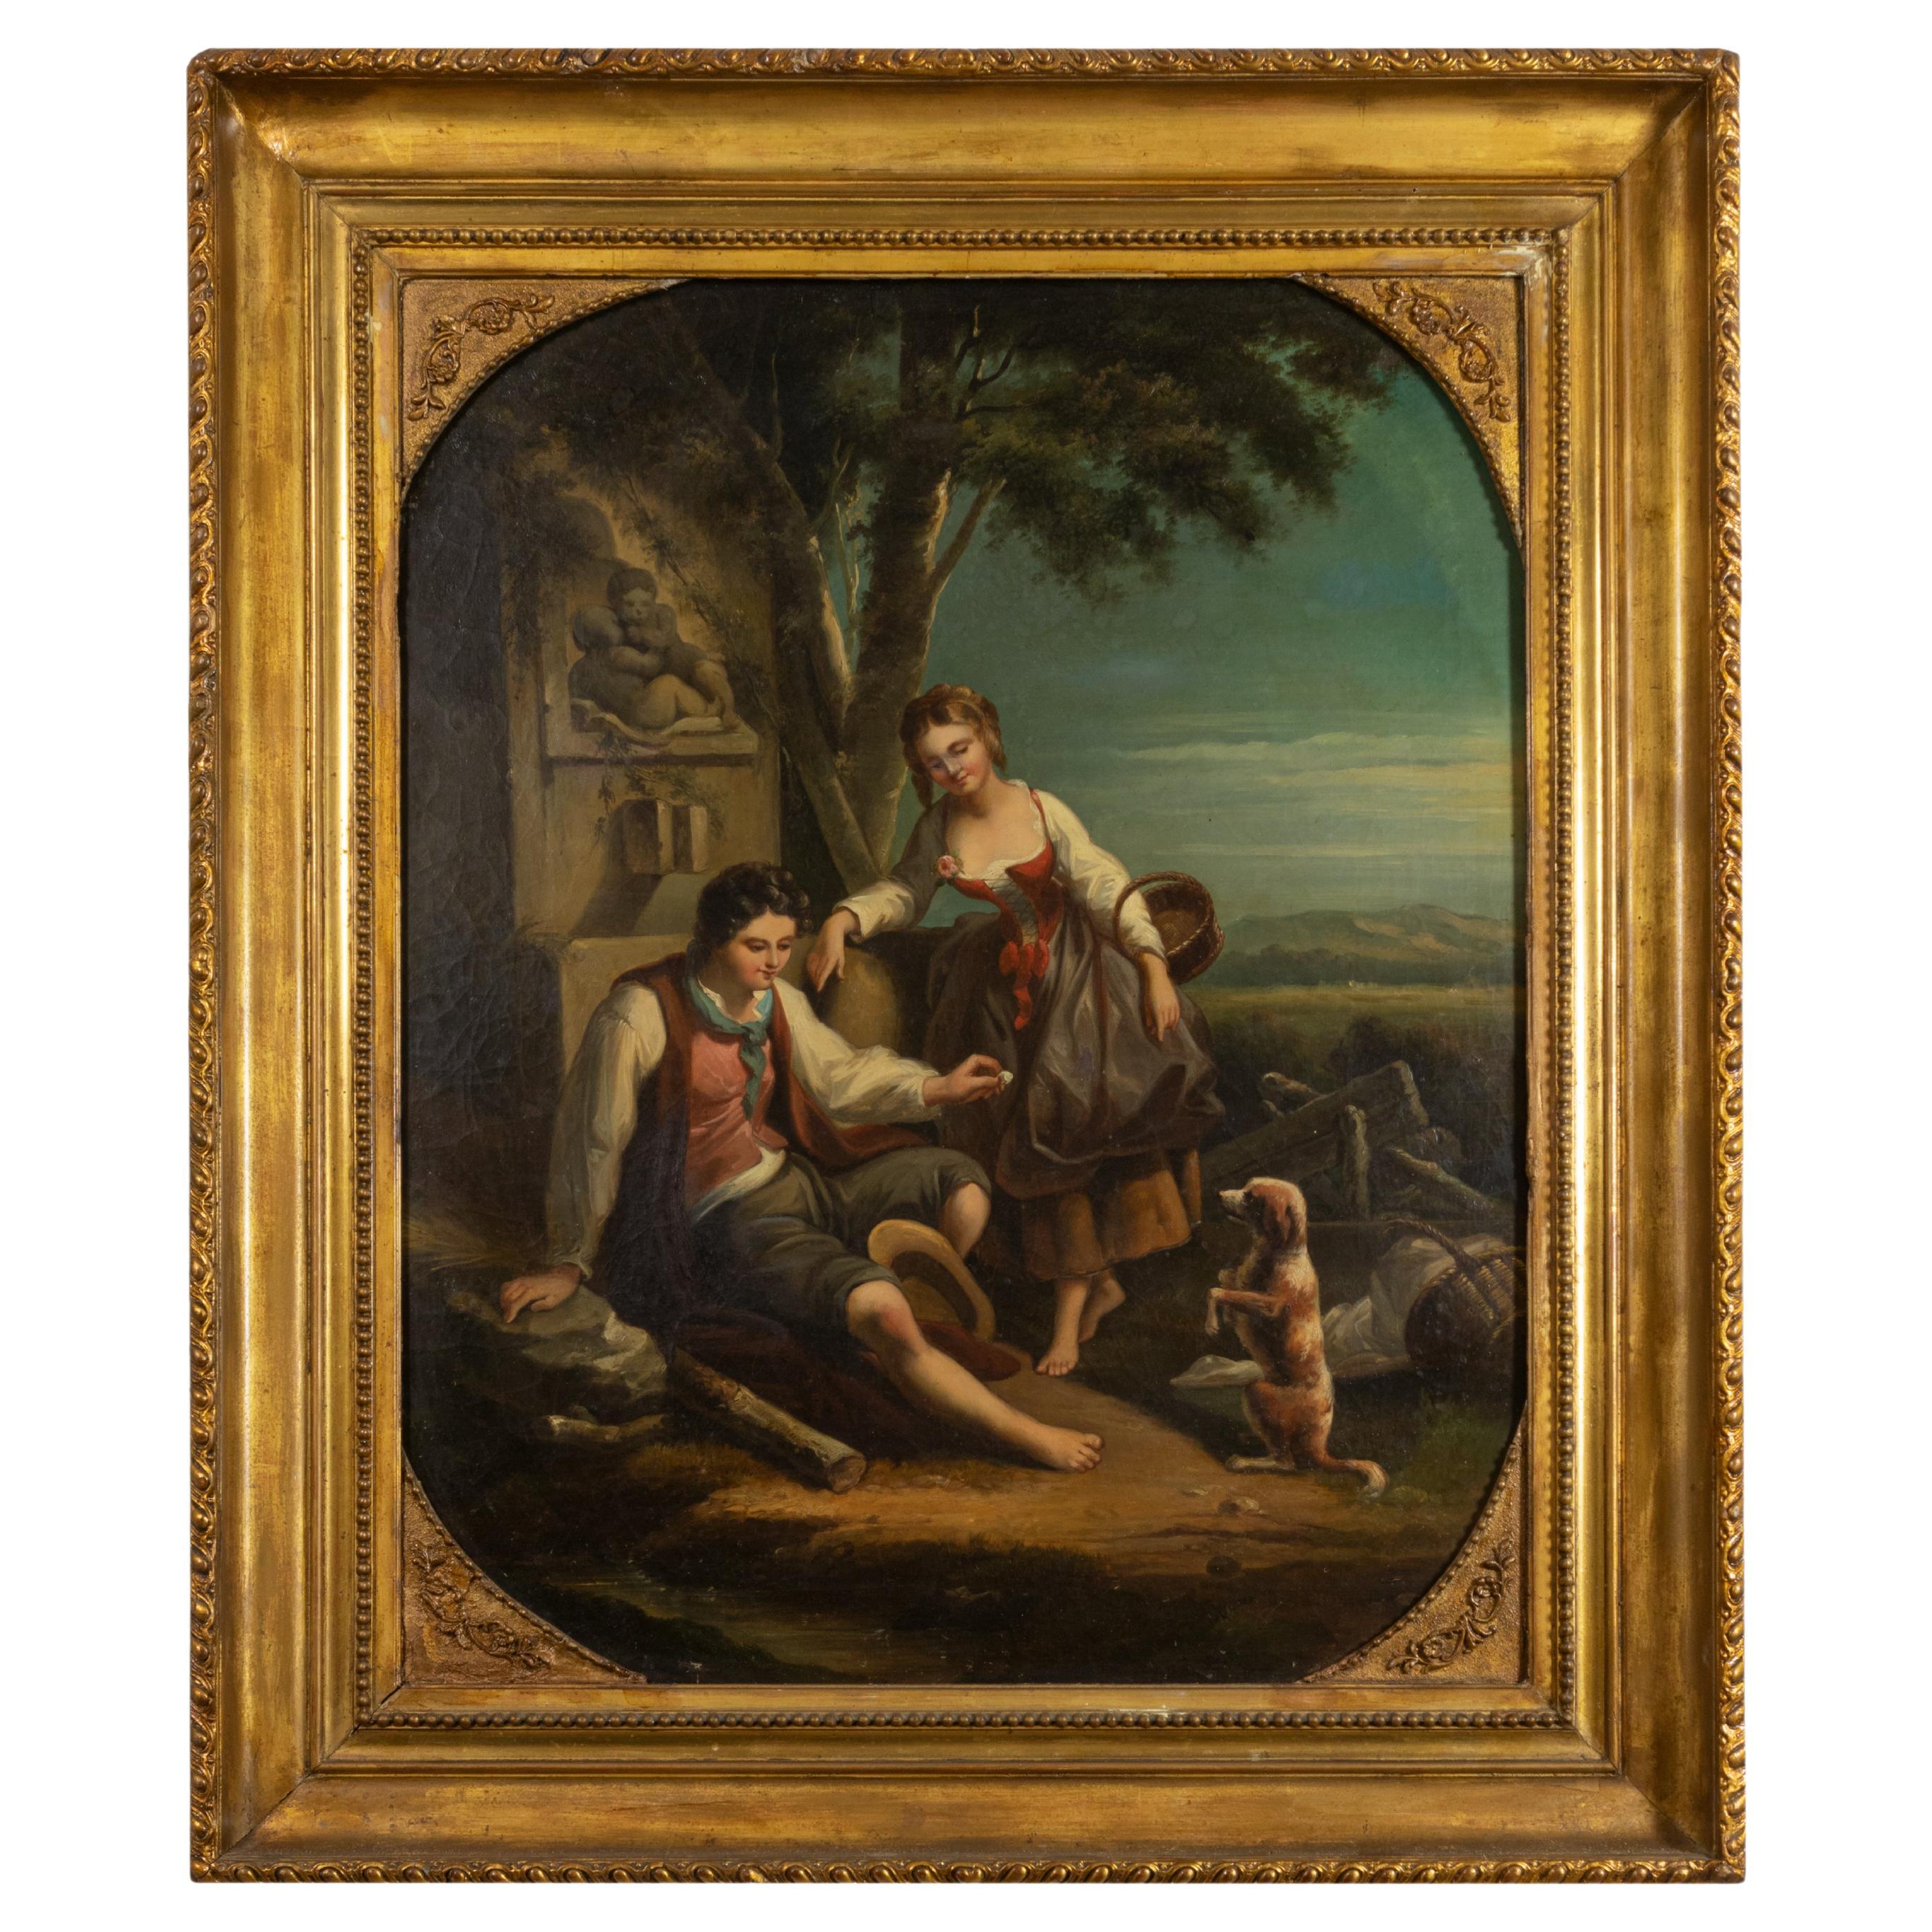 Barocke Malerei, Loving Couple, Watteau-Schule,  18. Jahrhundert